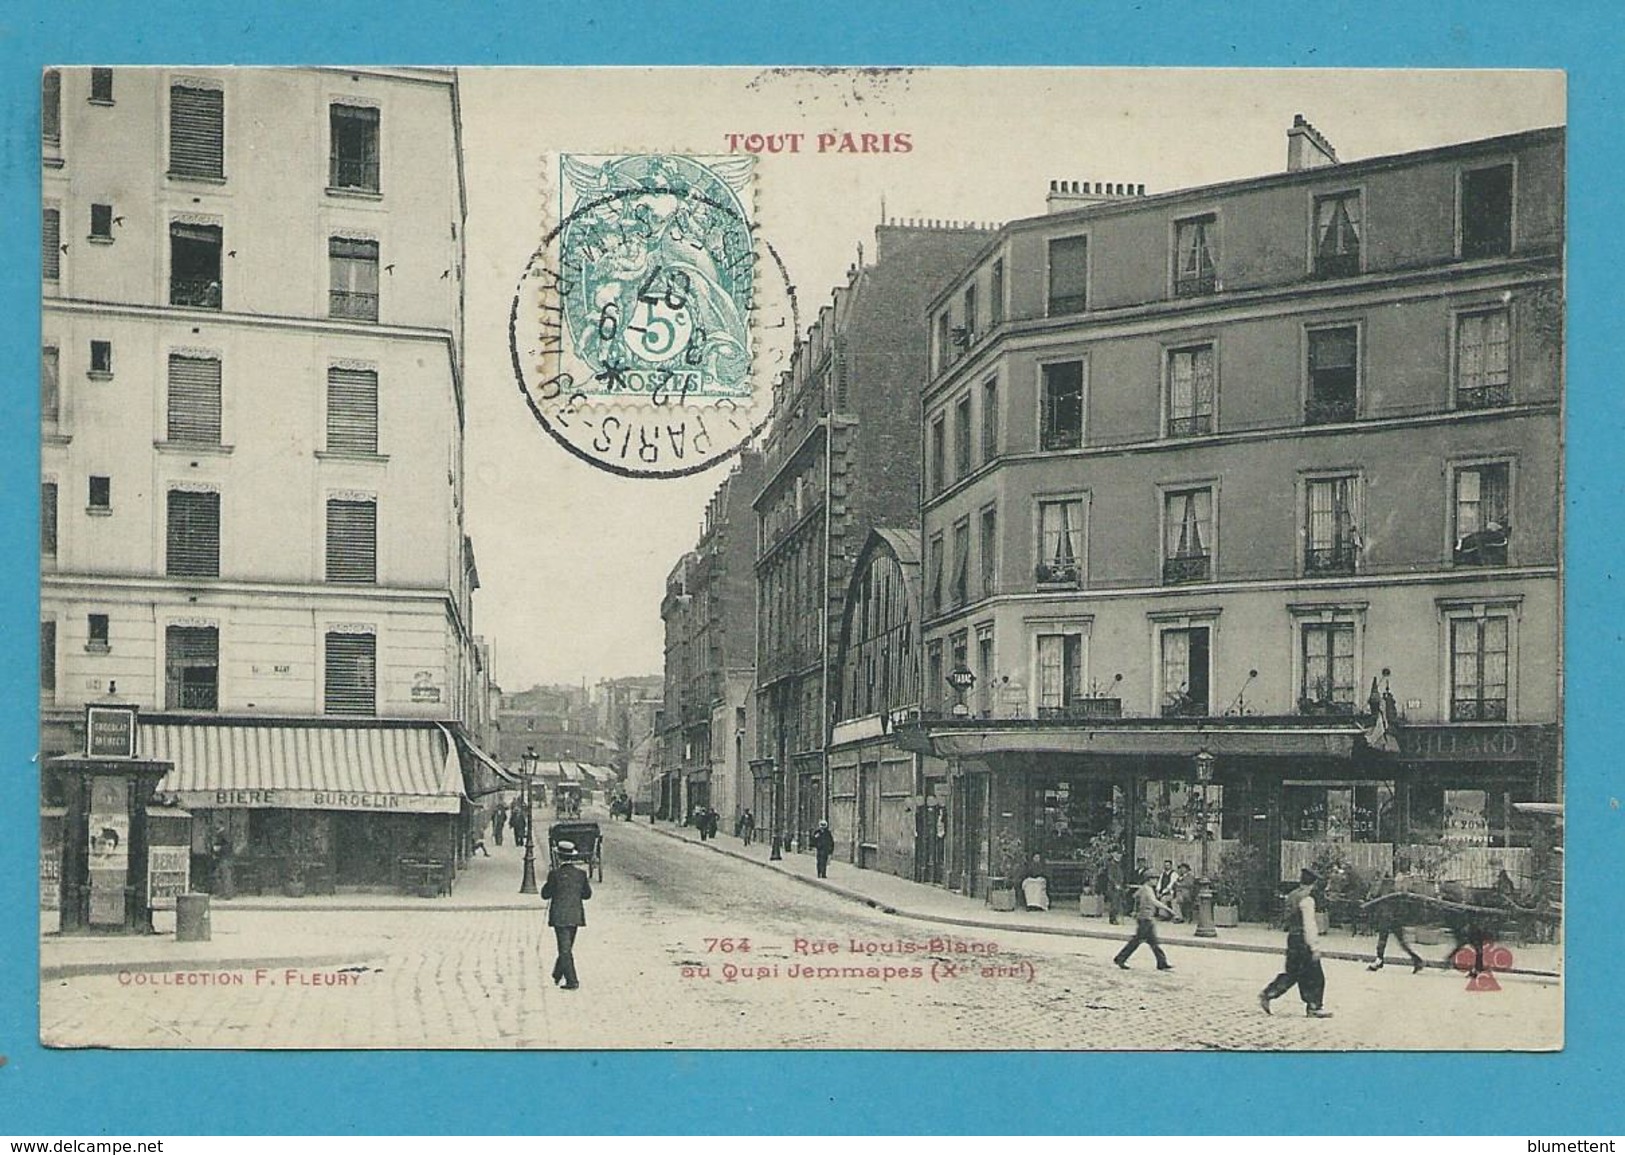 CPA TOUT PARIS 764 - Rue Louis-Blanc (Xème Arrt.) Edition FLEURY - Distretto: 10